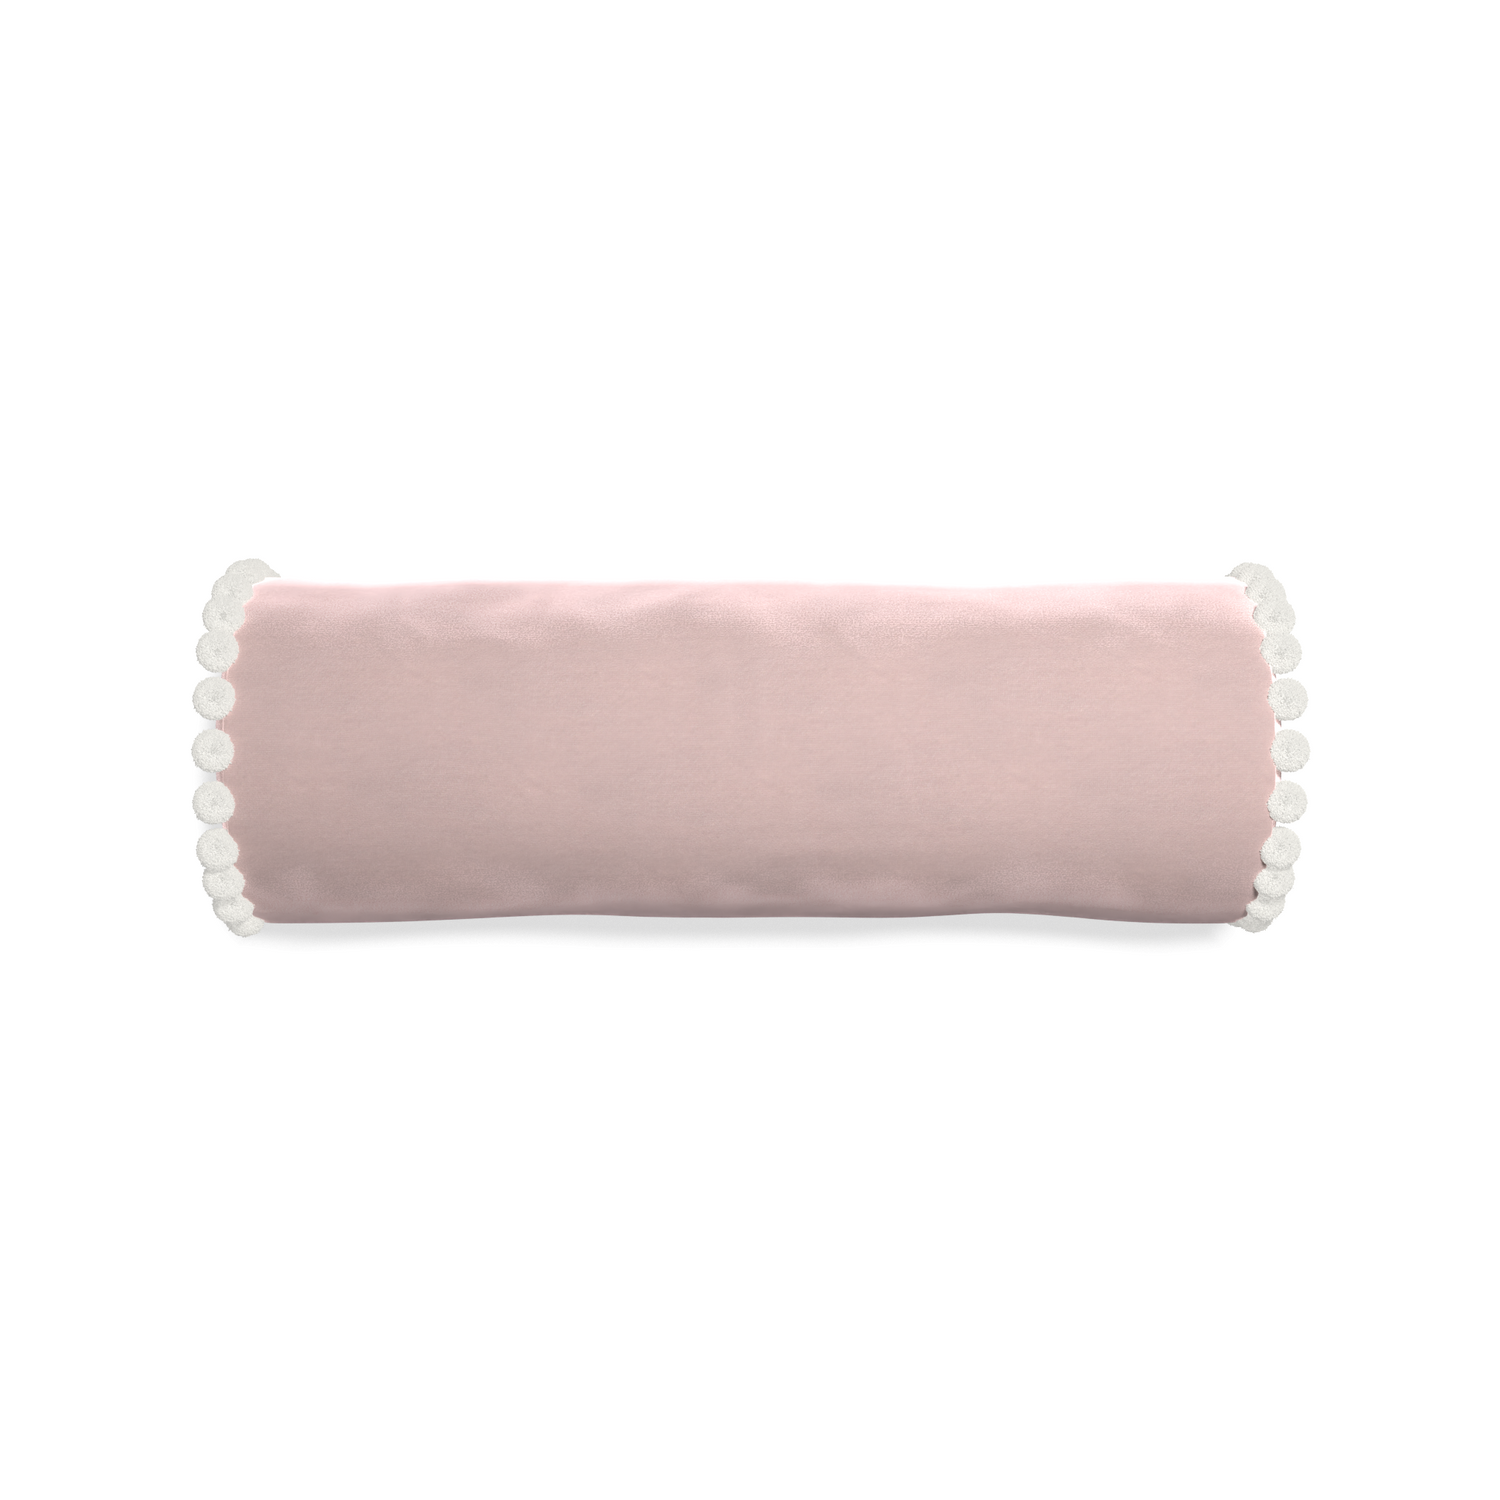 bolster light pink velvet pillow with white pom poms